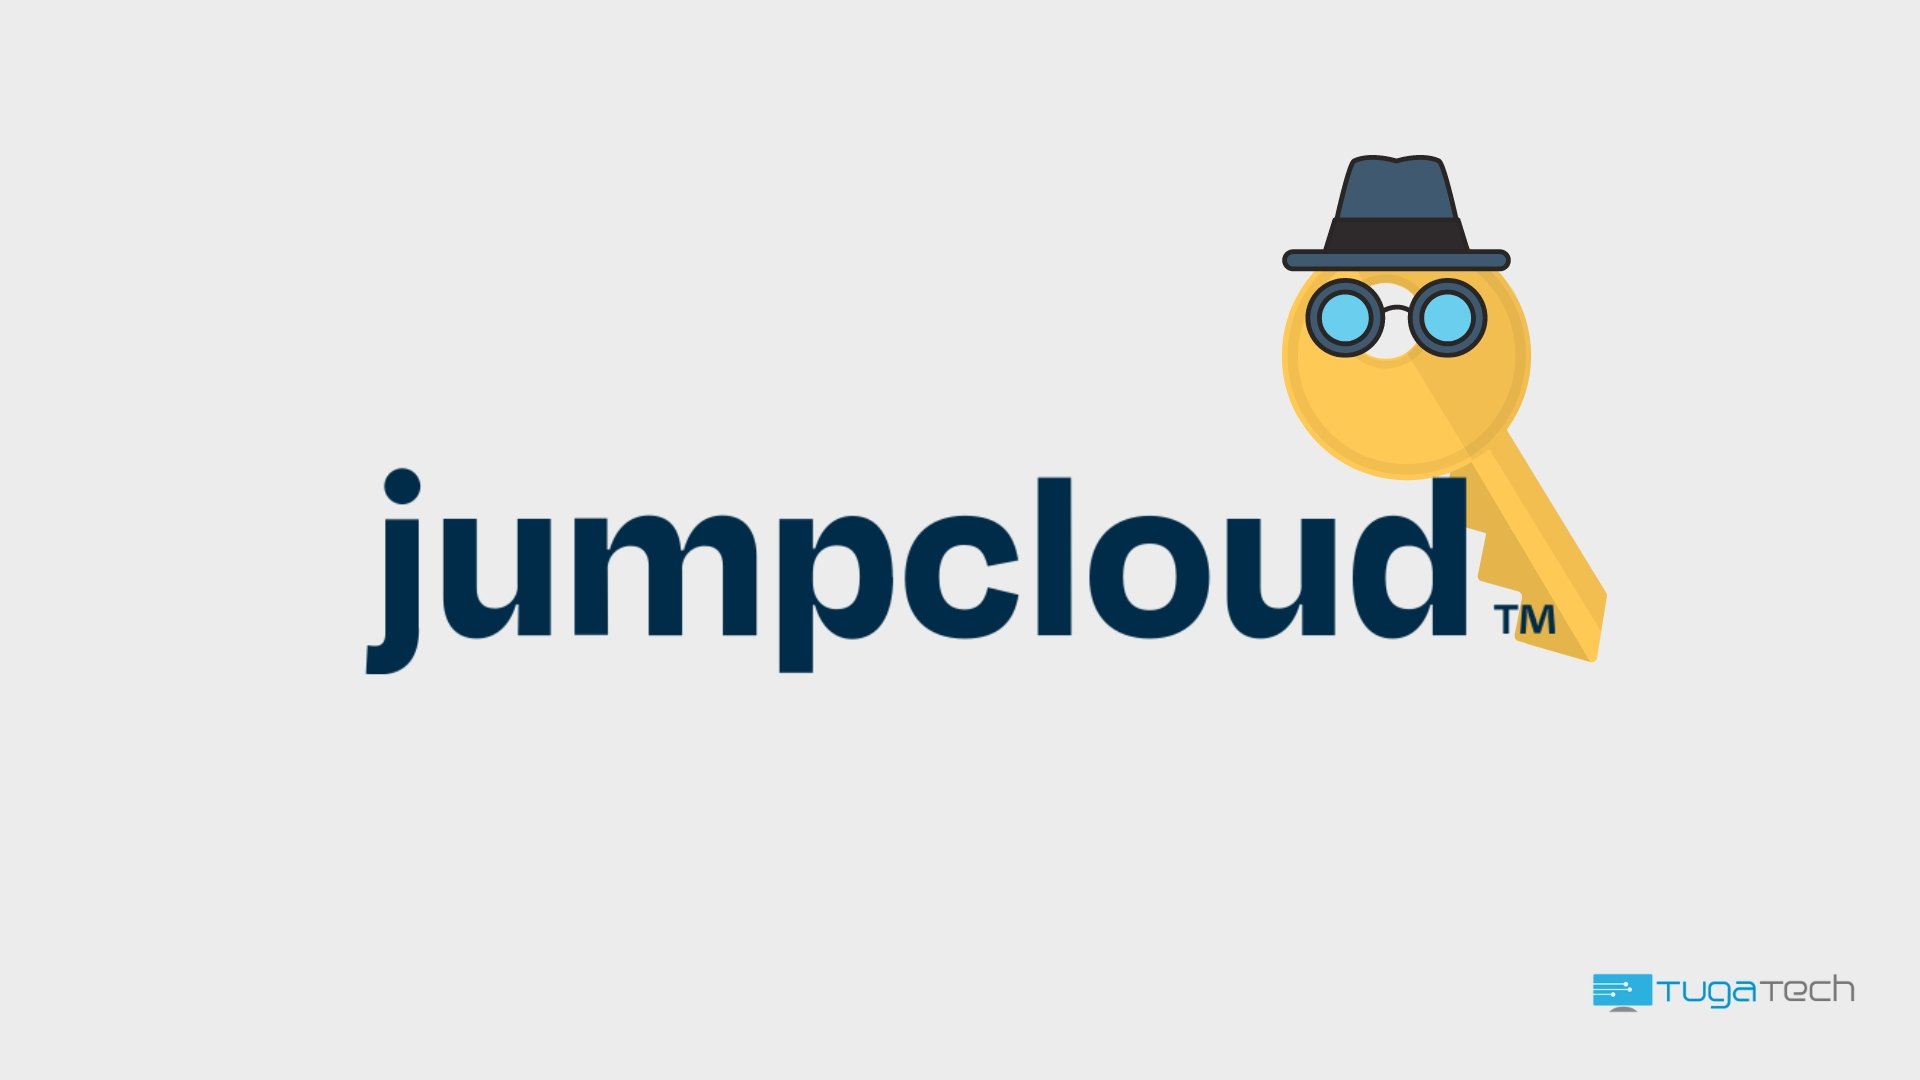 JumpCloud realiza reset da chaves de API devido a “incidente”